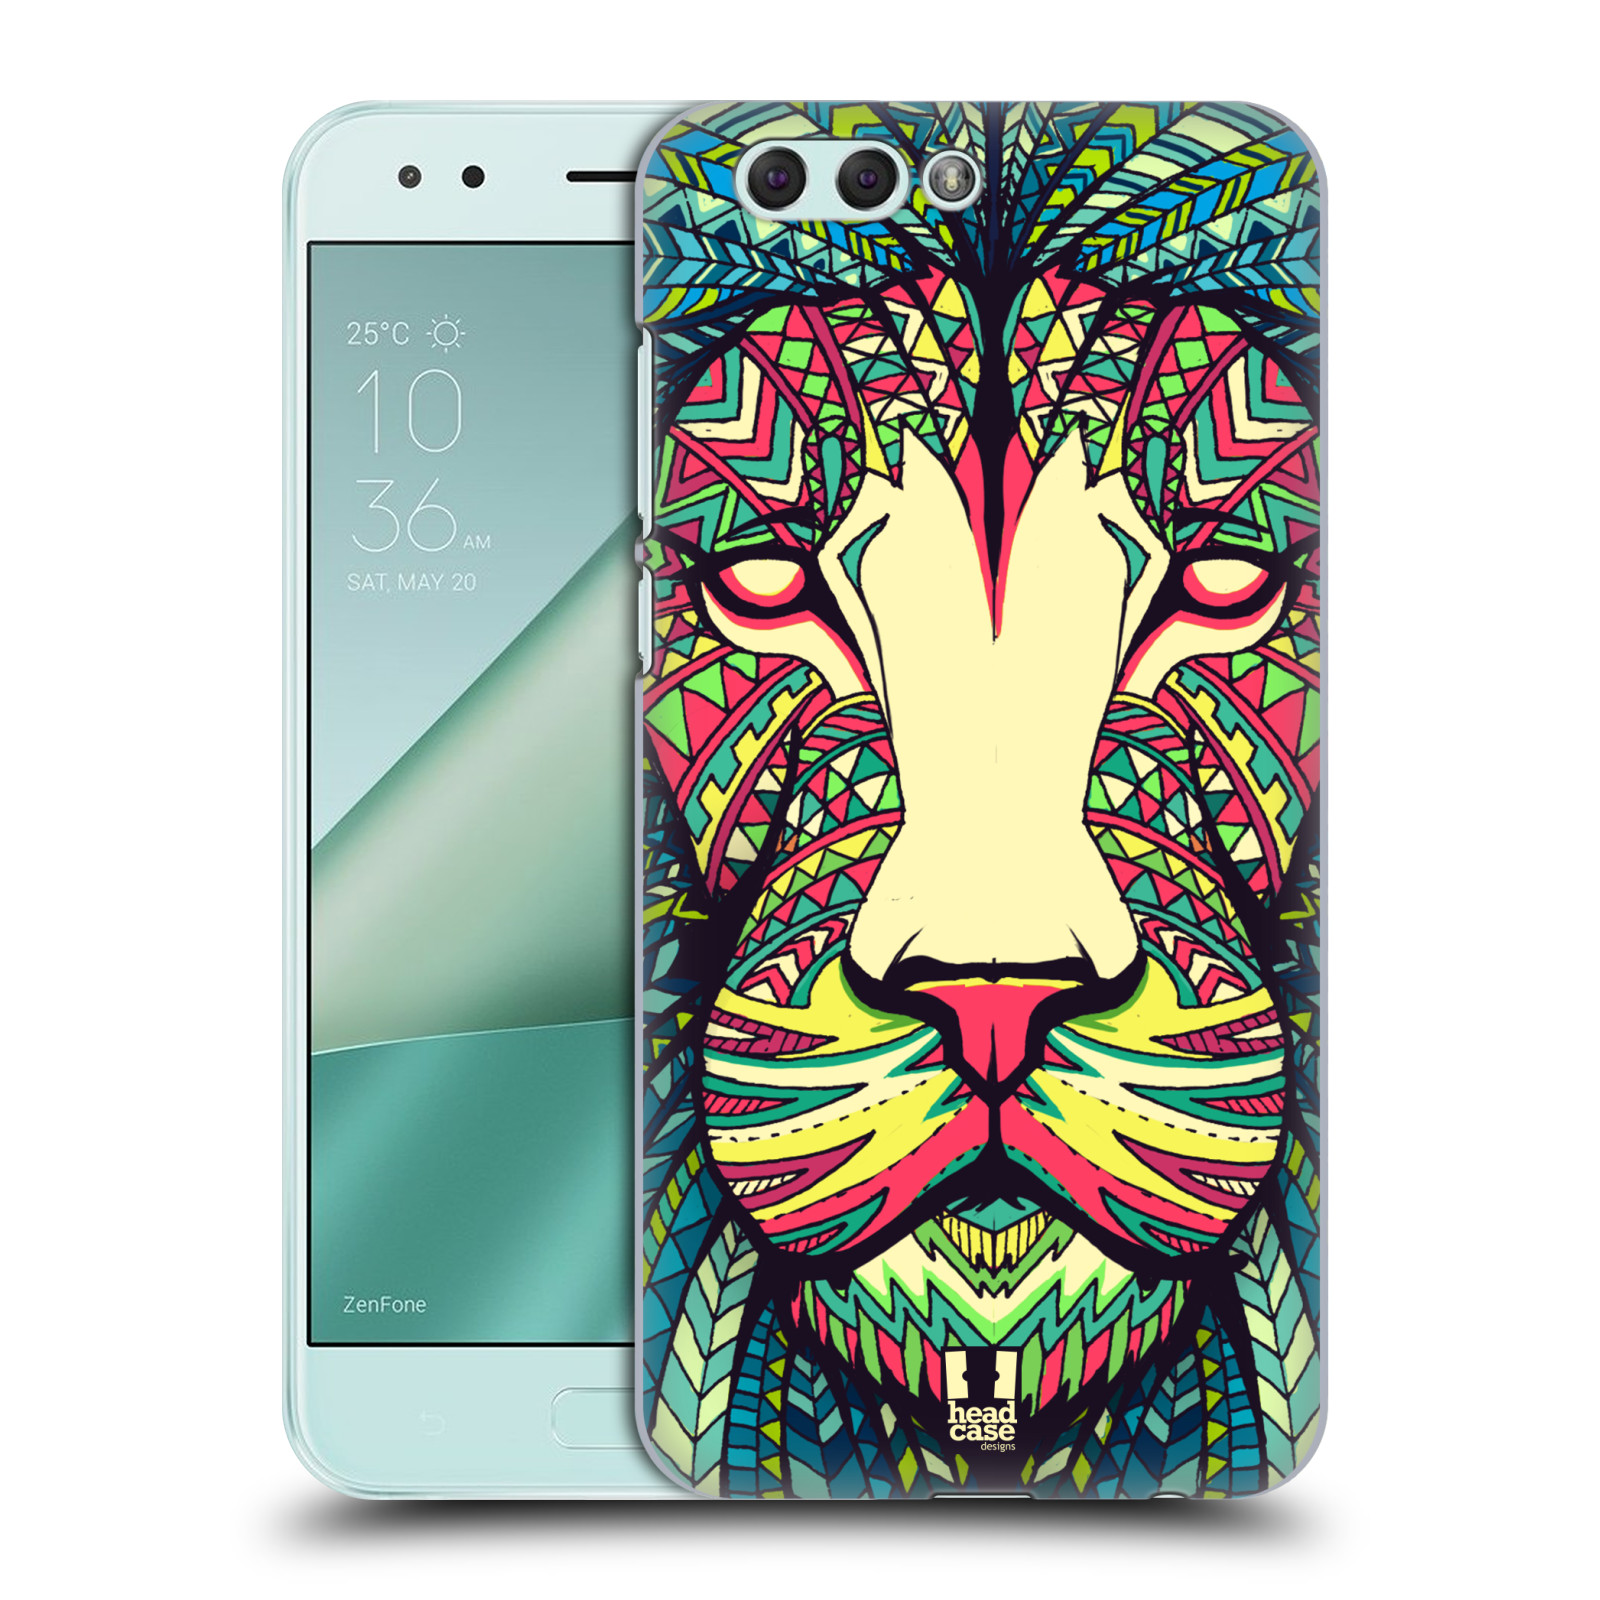 HEAD CASE plastový obal na mobil Asus Zenfone 4 ZE554KL vzor Aztécký motiv zvíře lev